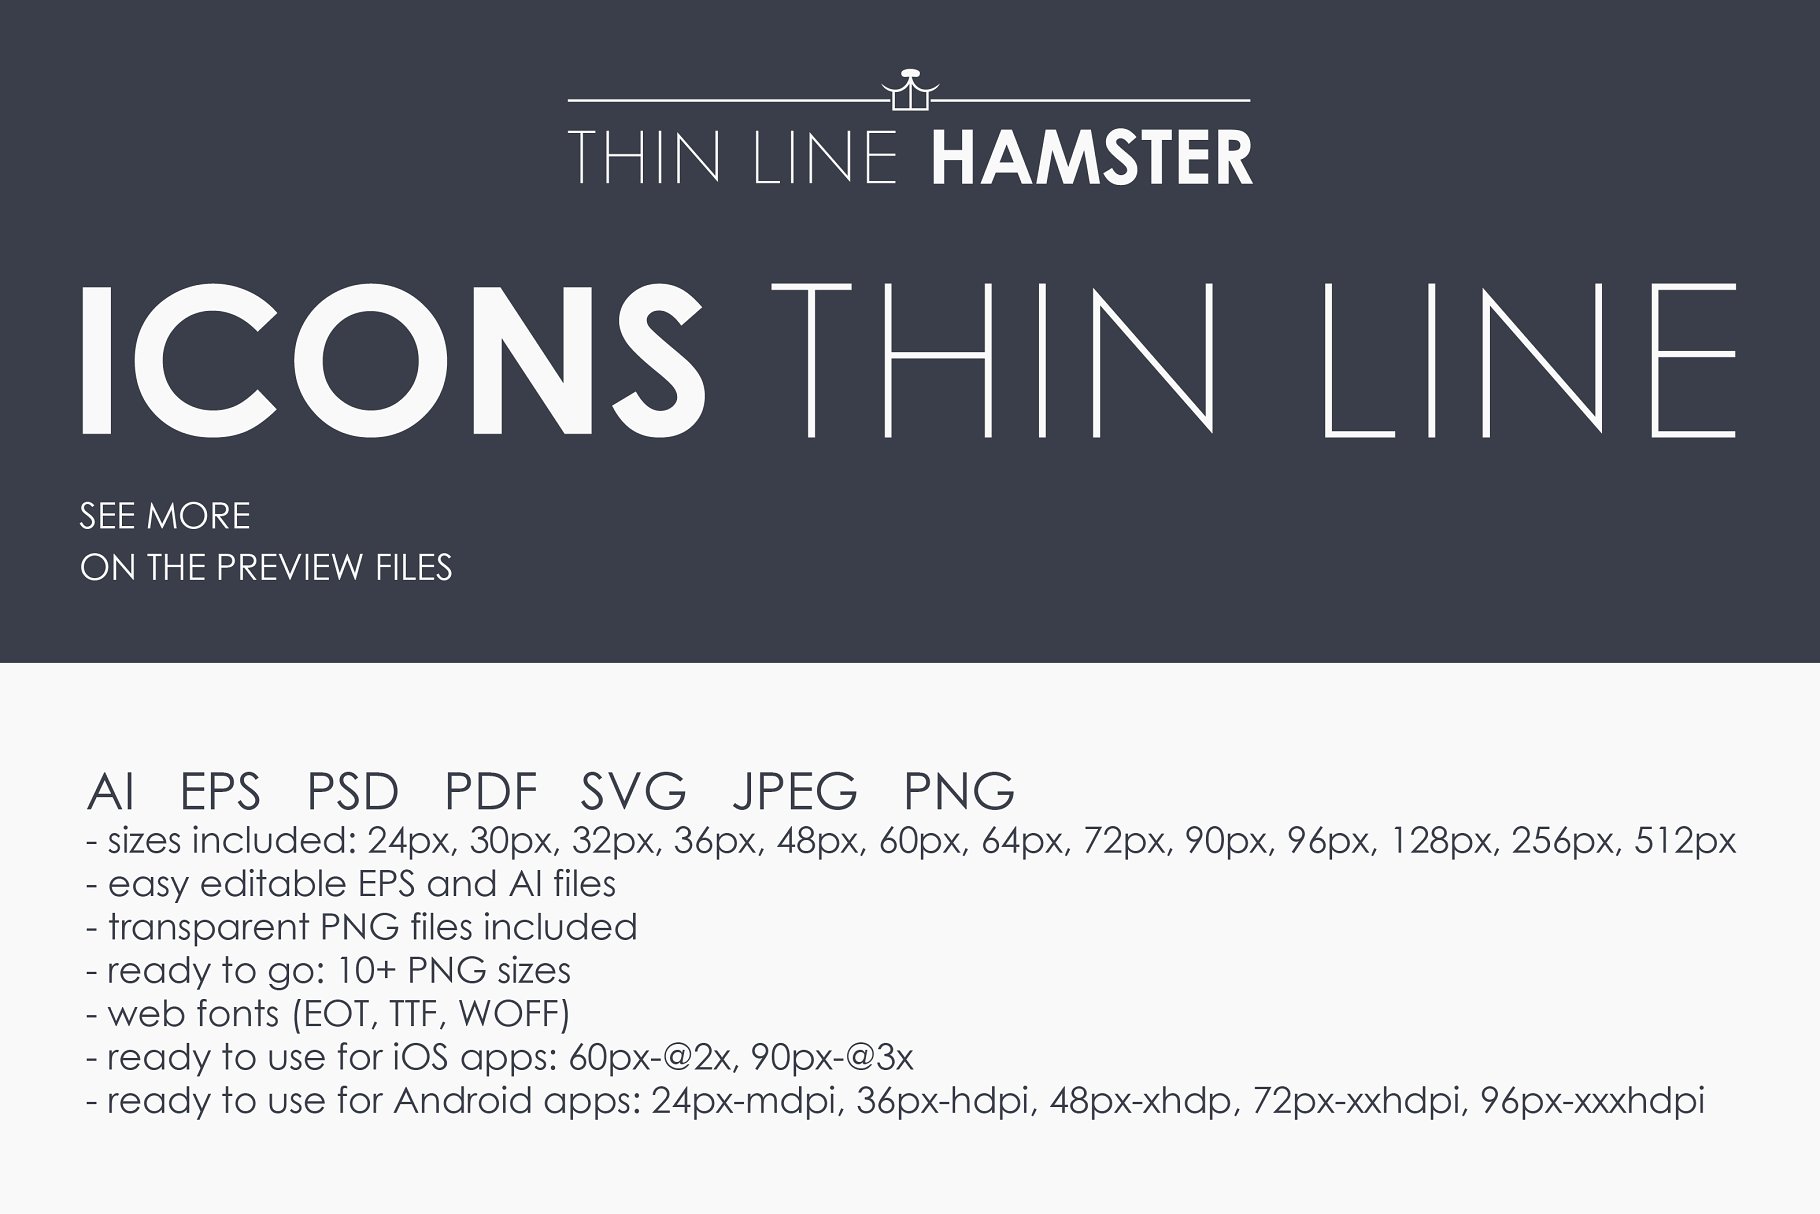 2000+枚细线构图图标合集 Thin Line HAMSTER Icons插图(7)